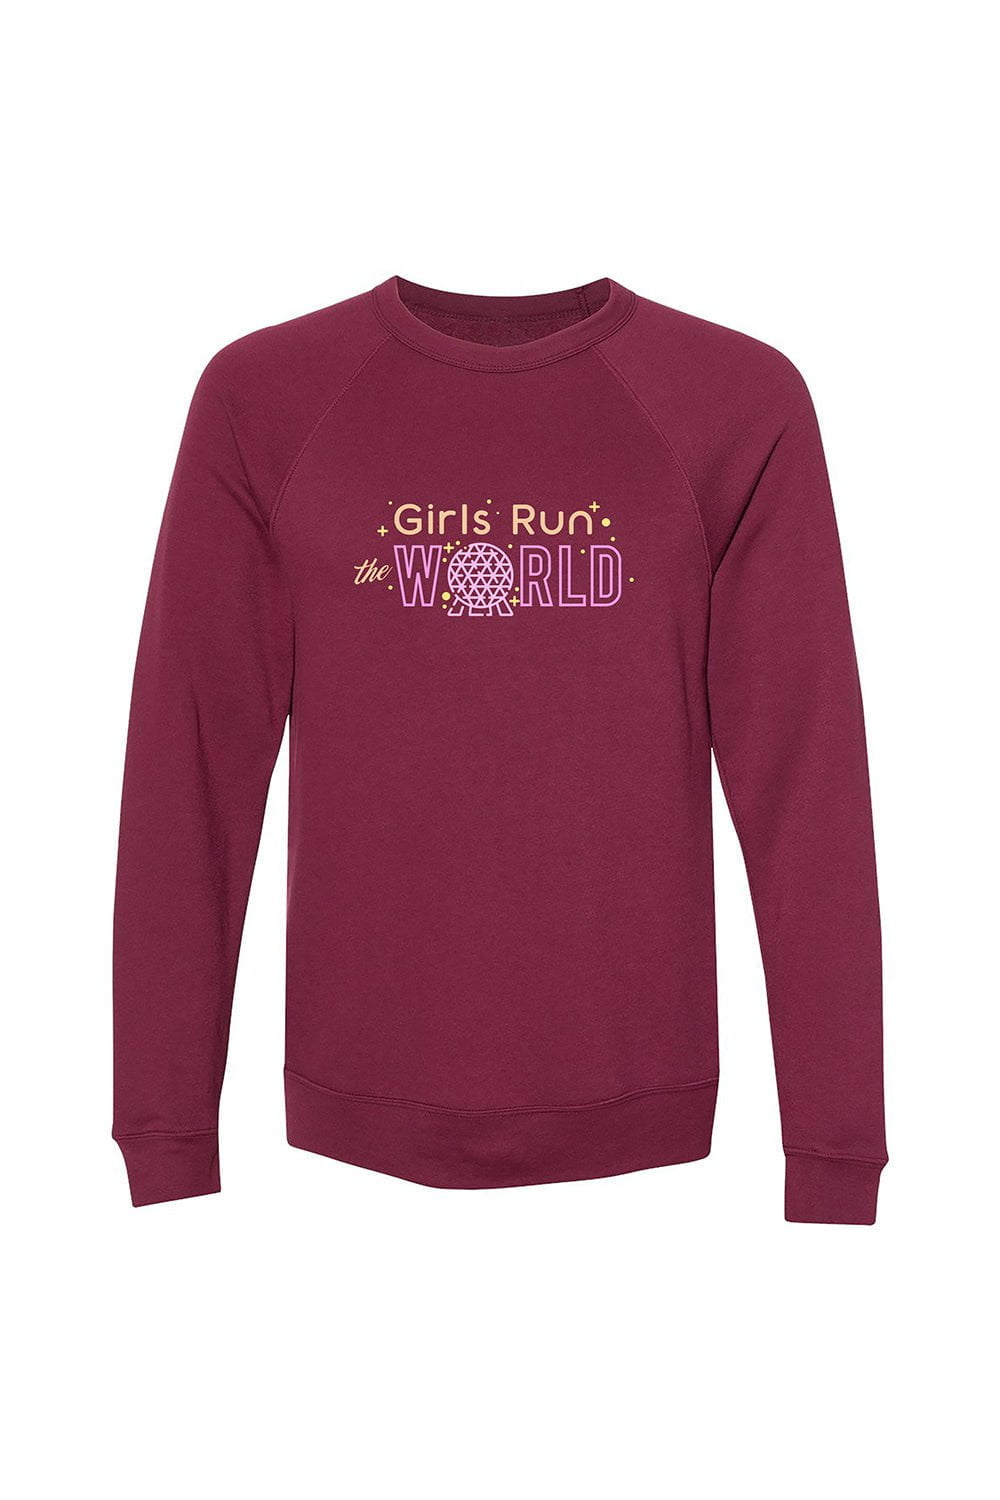 Sarah Marie Design Studio Sweatshirt XSmall / Maroon Girls Run The World Epcot Sweatshirt